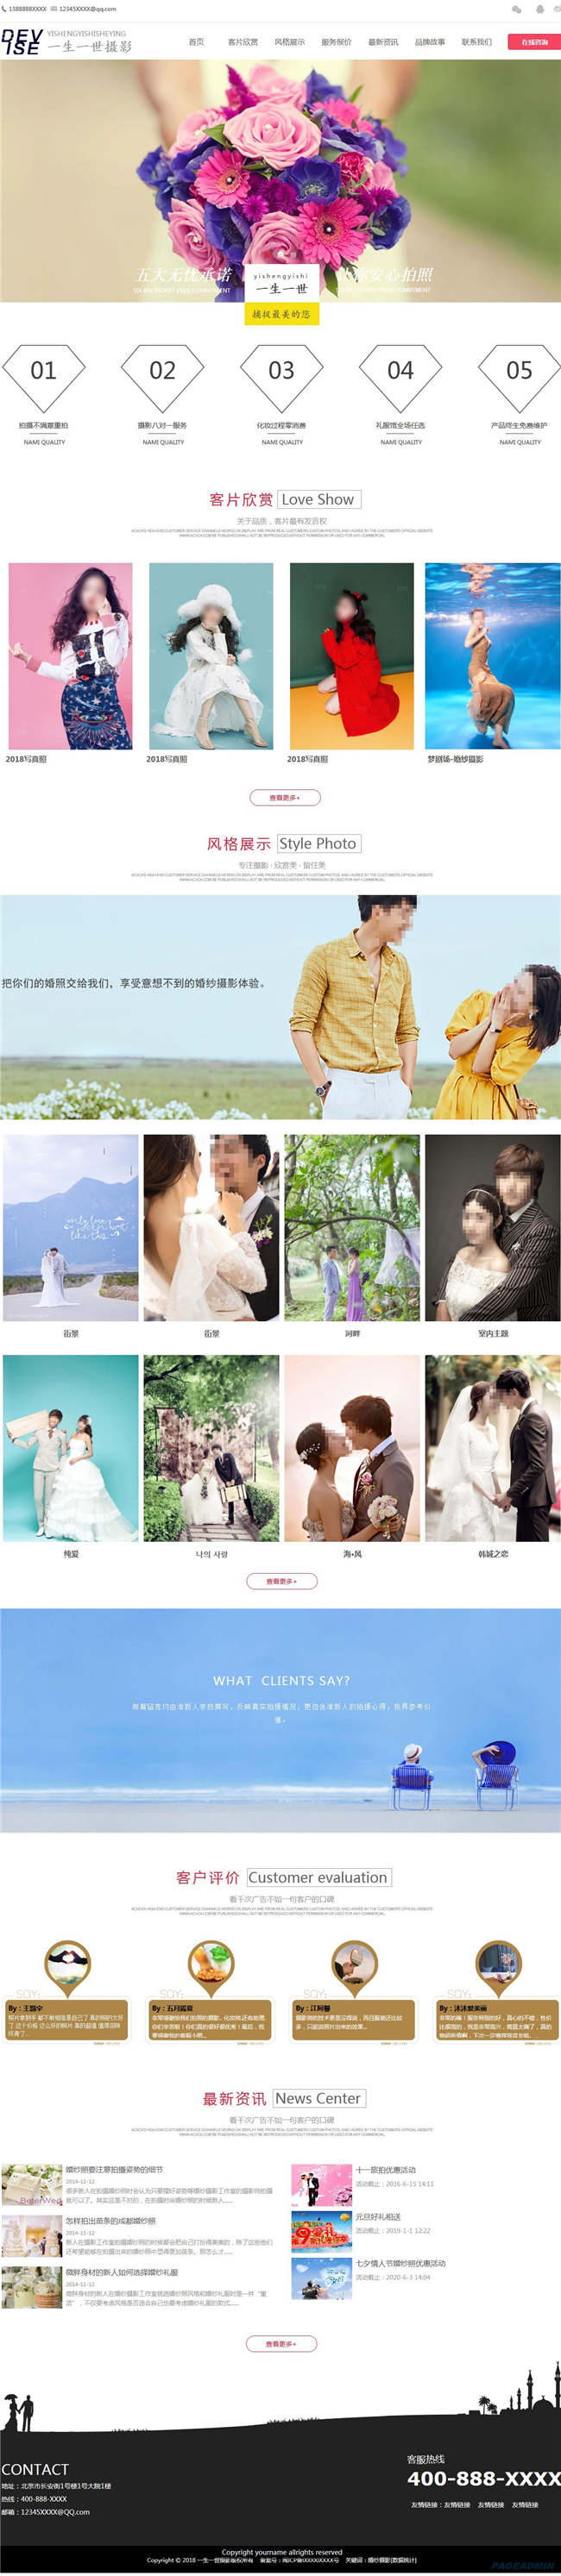 摄影公司婚庆策划婚纱摄影网站WordPress模板下载演示图